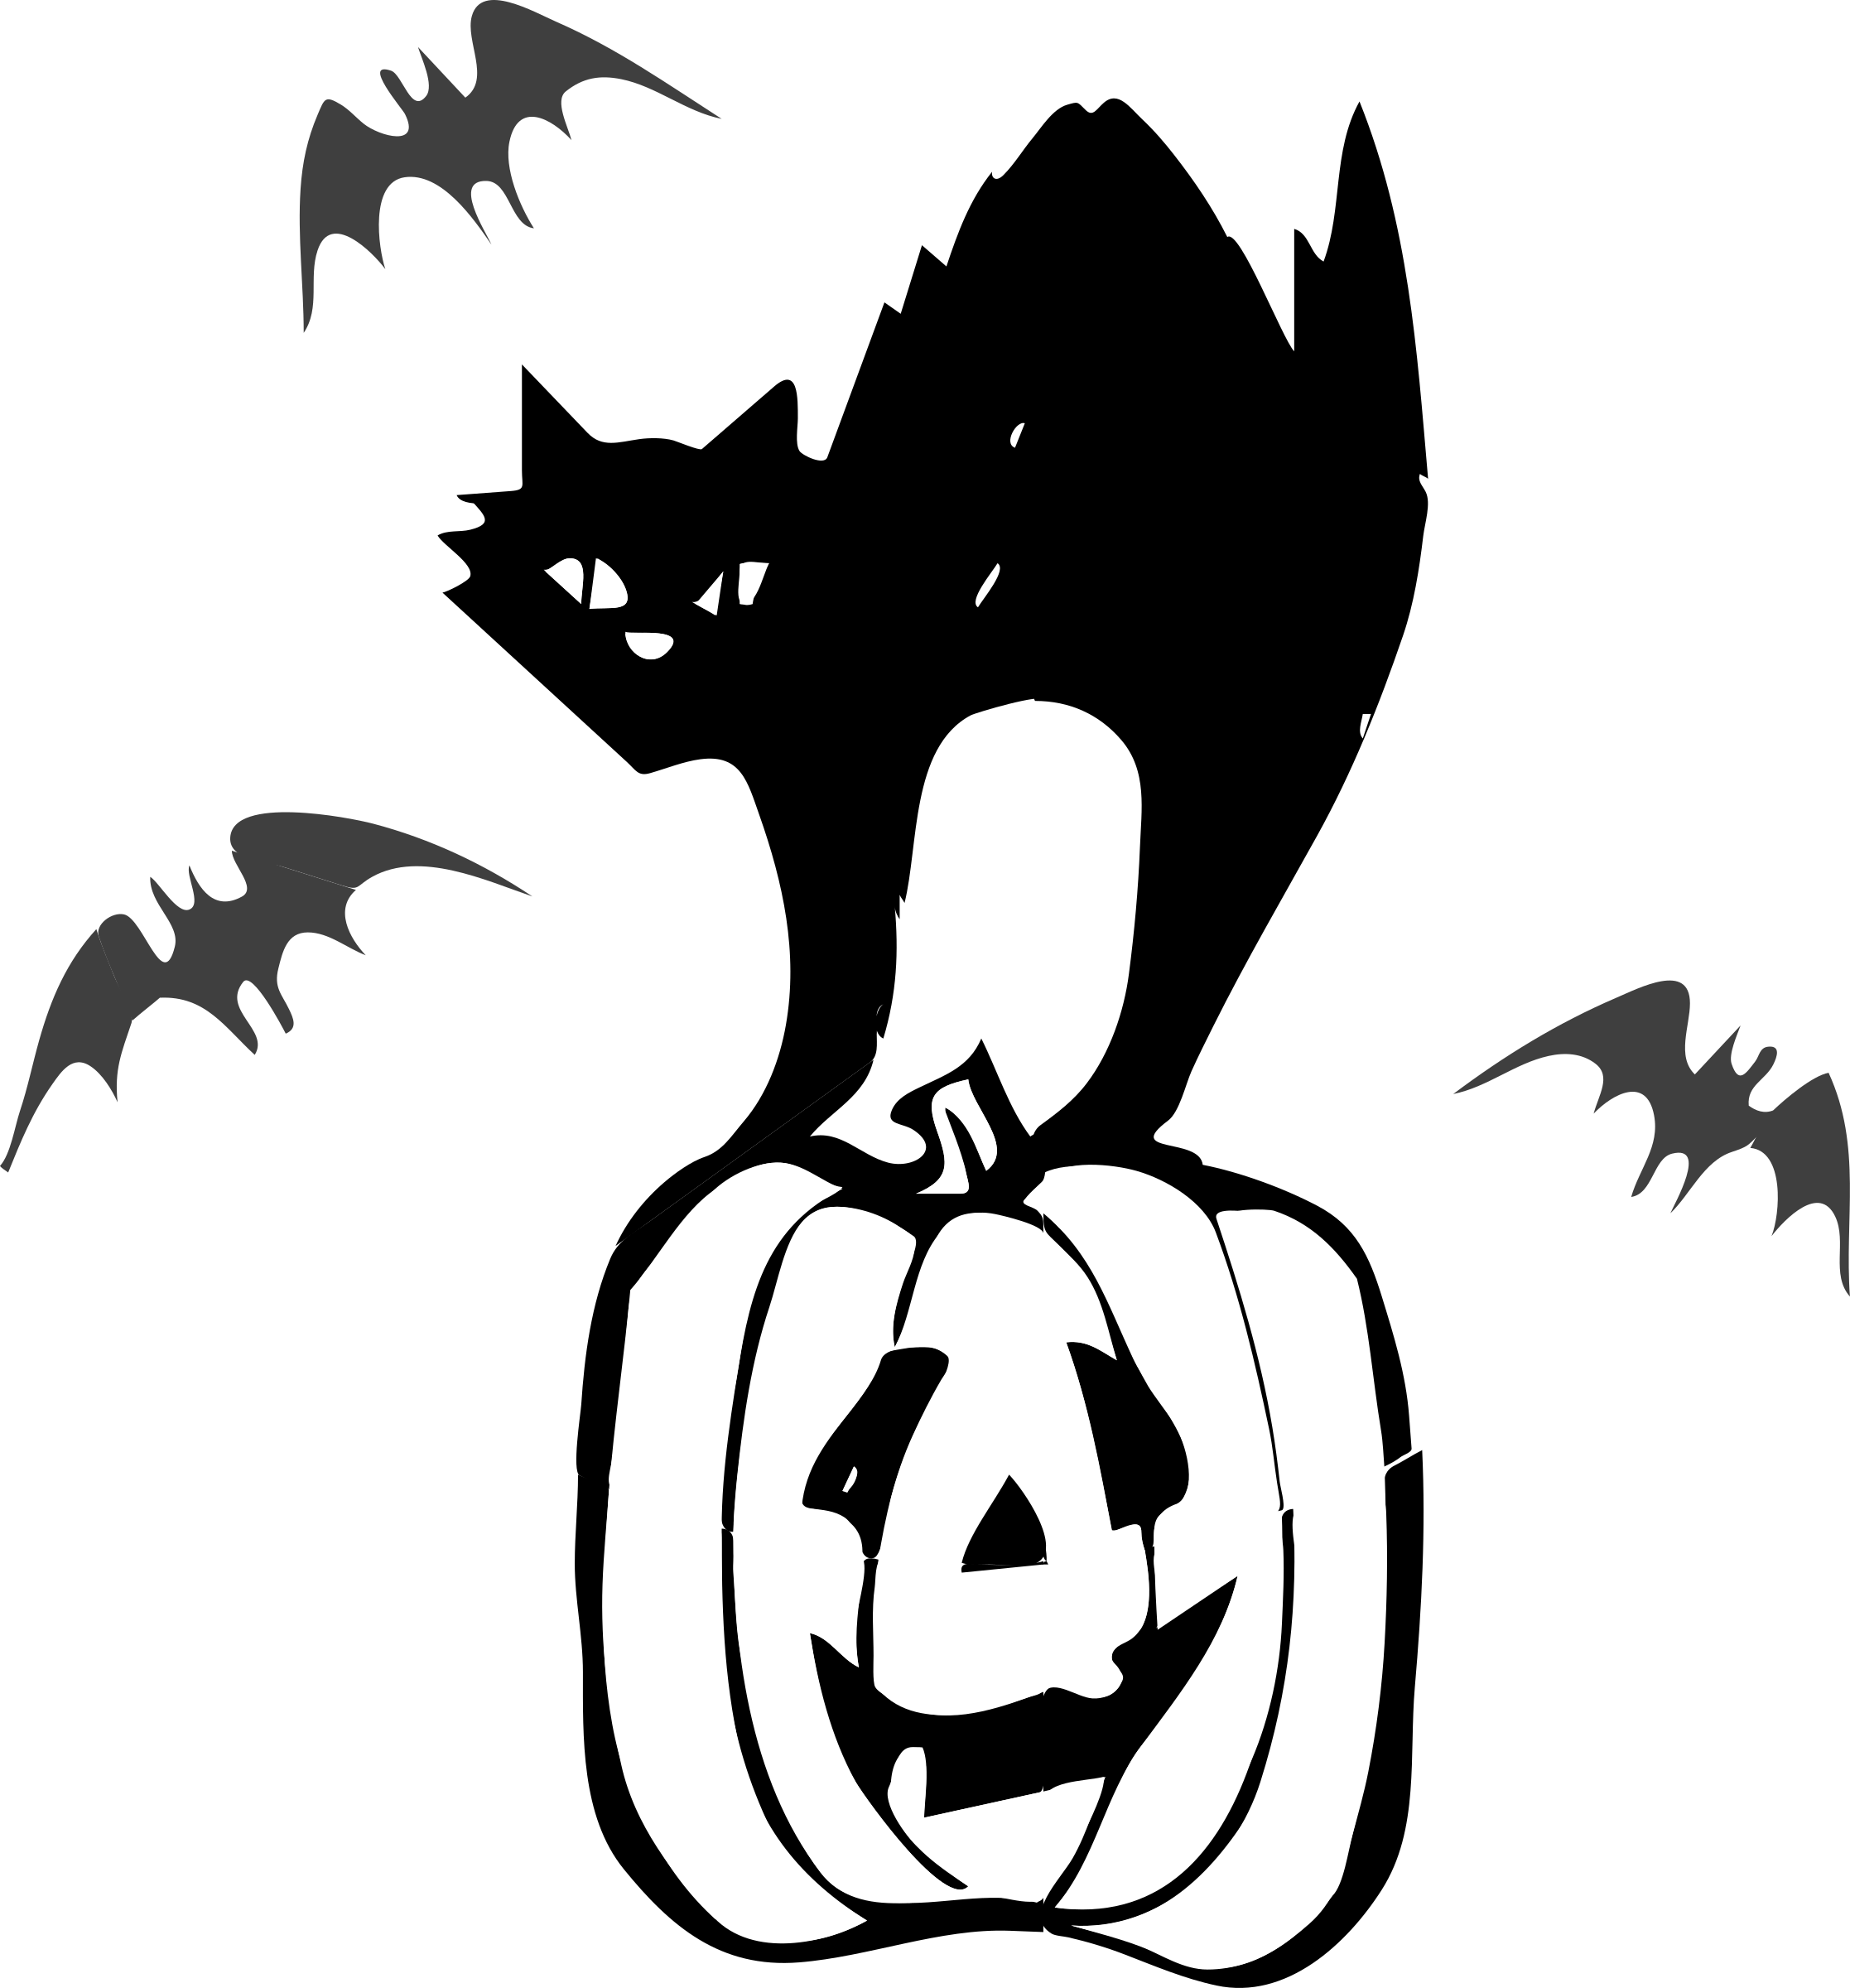 Immagine Trasparente del gatto nero di Halloween